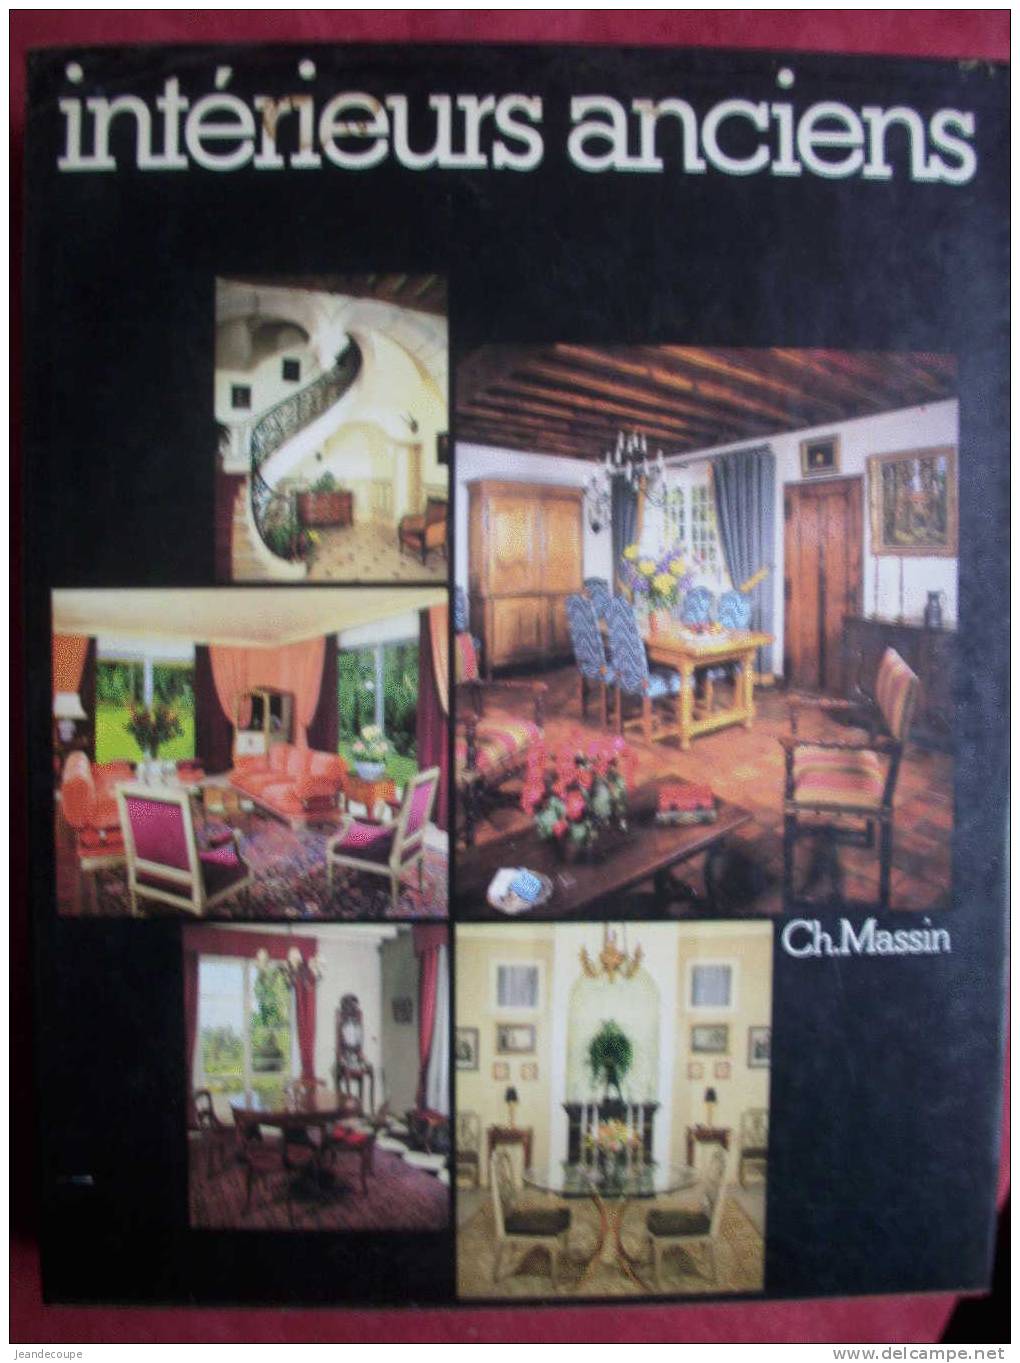 CH. MASSIN - Décoration Intérieur - Intérieurs Anciens - Mobilier Rustique - Meubles - Objets D'art - Home Decoration